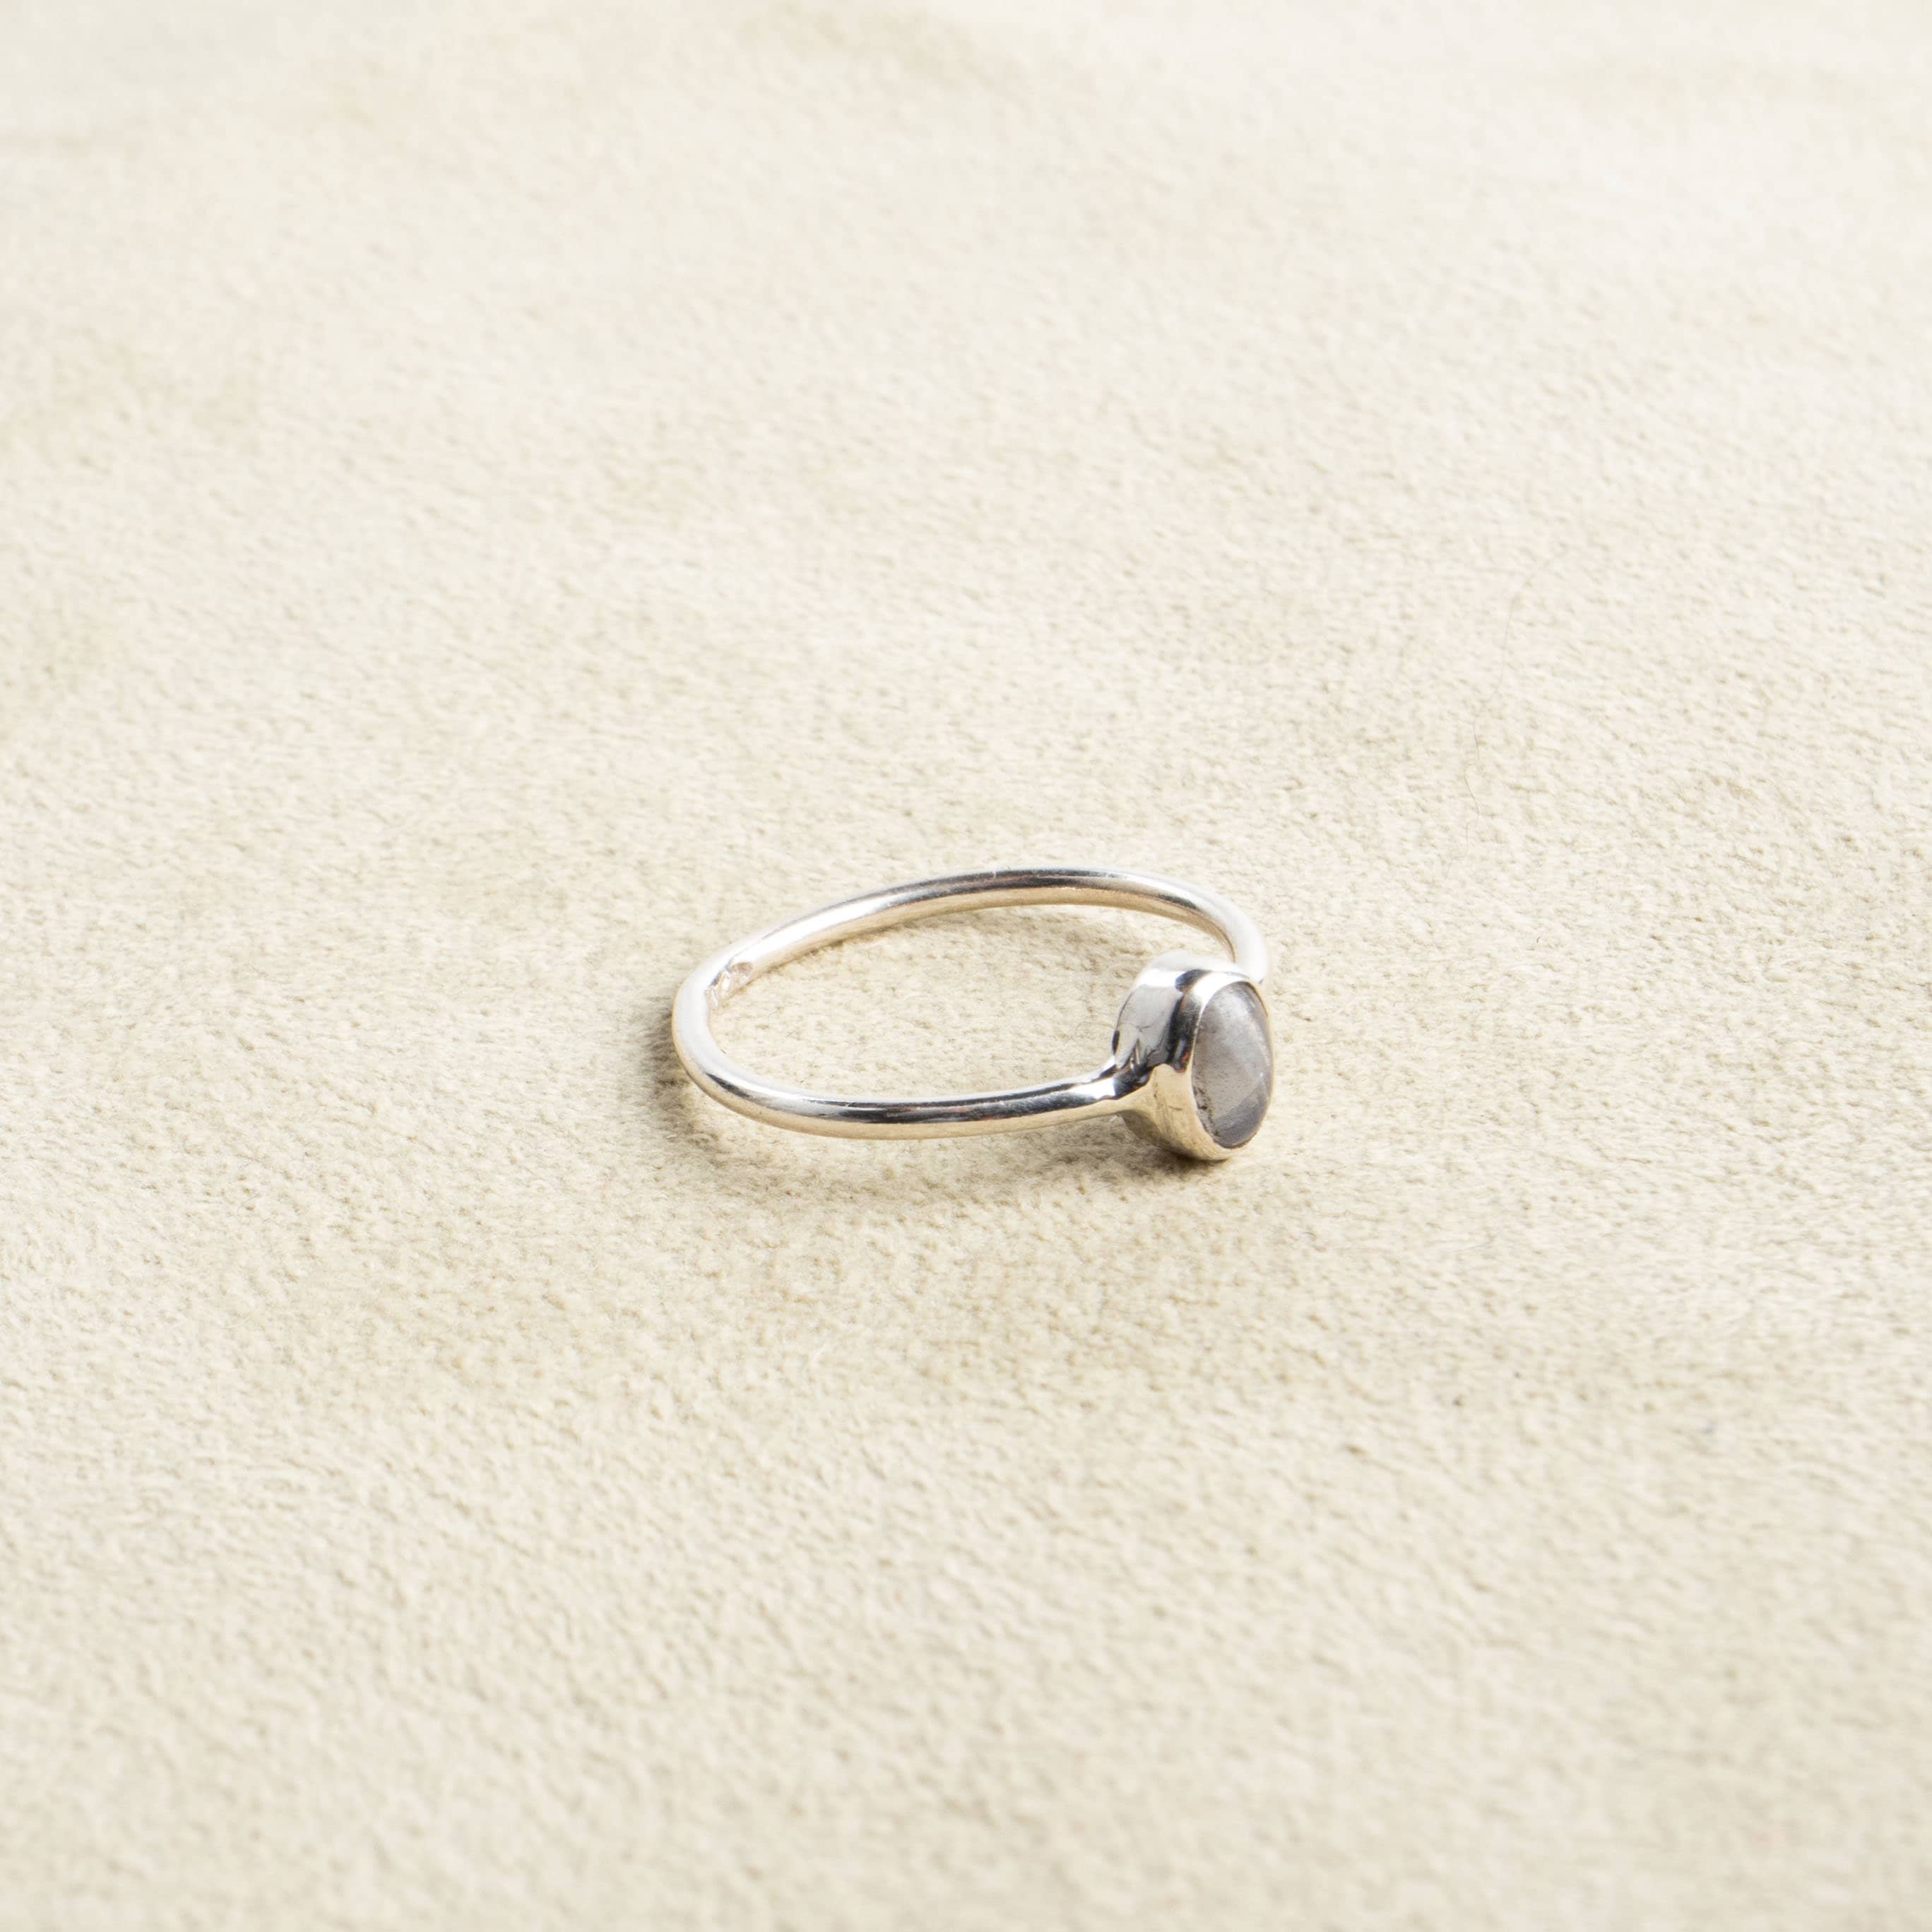 Feiner Mondstein Ring mit ovalem Stein 925 Sterling Silber handgemacht